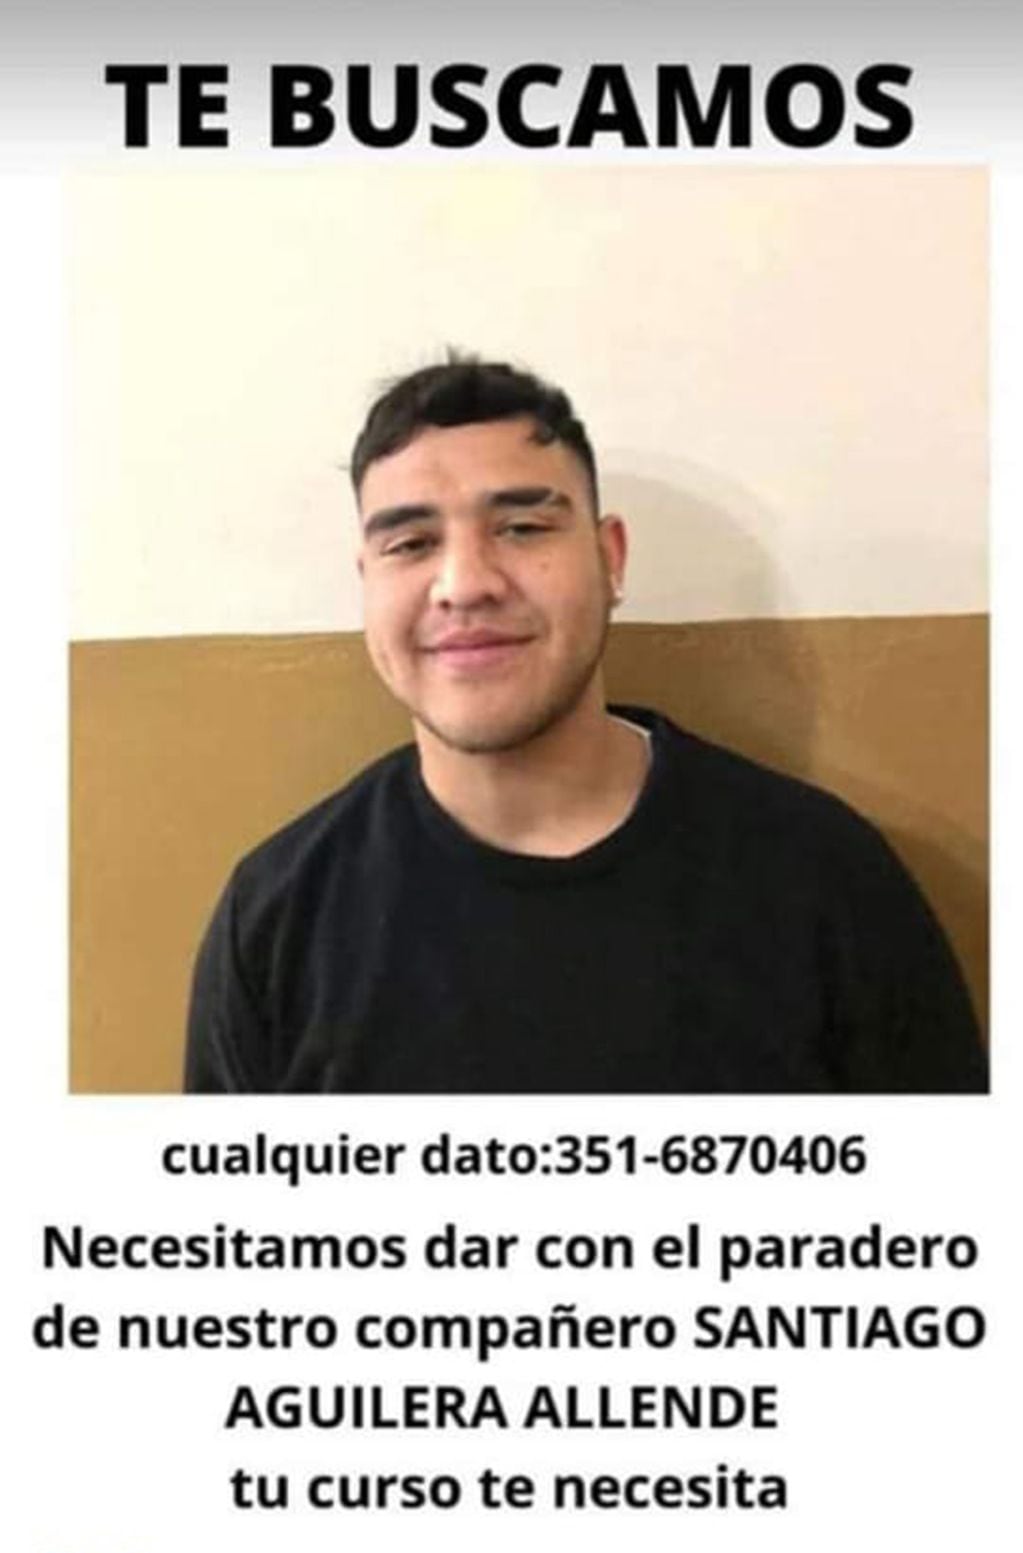 Posteo de la campaña de búsqueda de Santiago Aguilera Allende, el joven que continúa desaparecido en el Valle de Traslasierra, Córdoba.